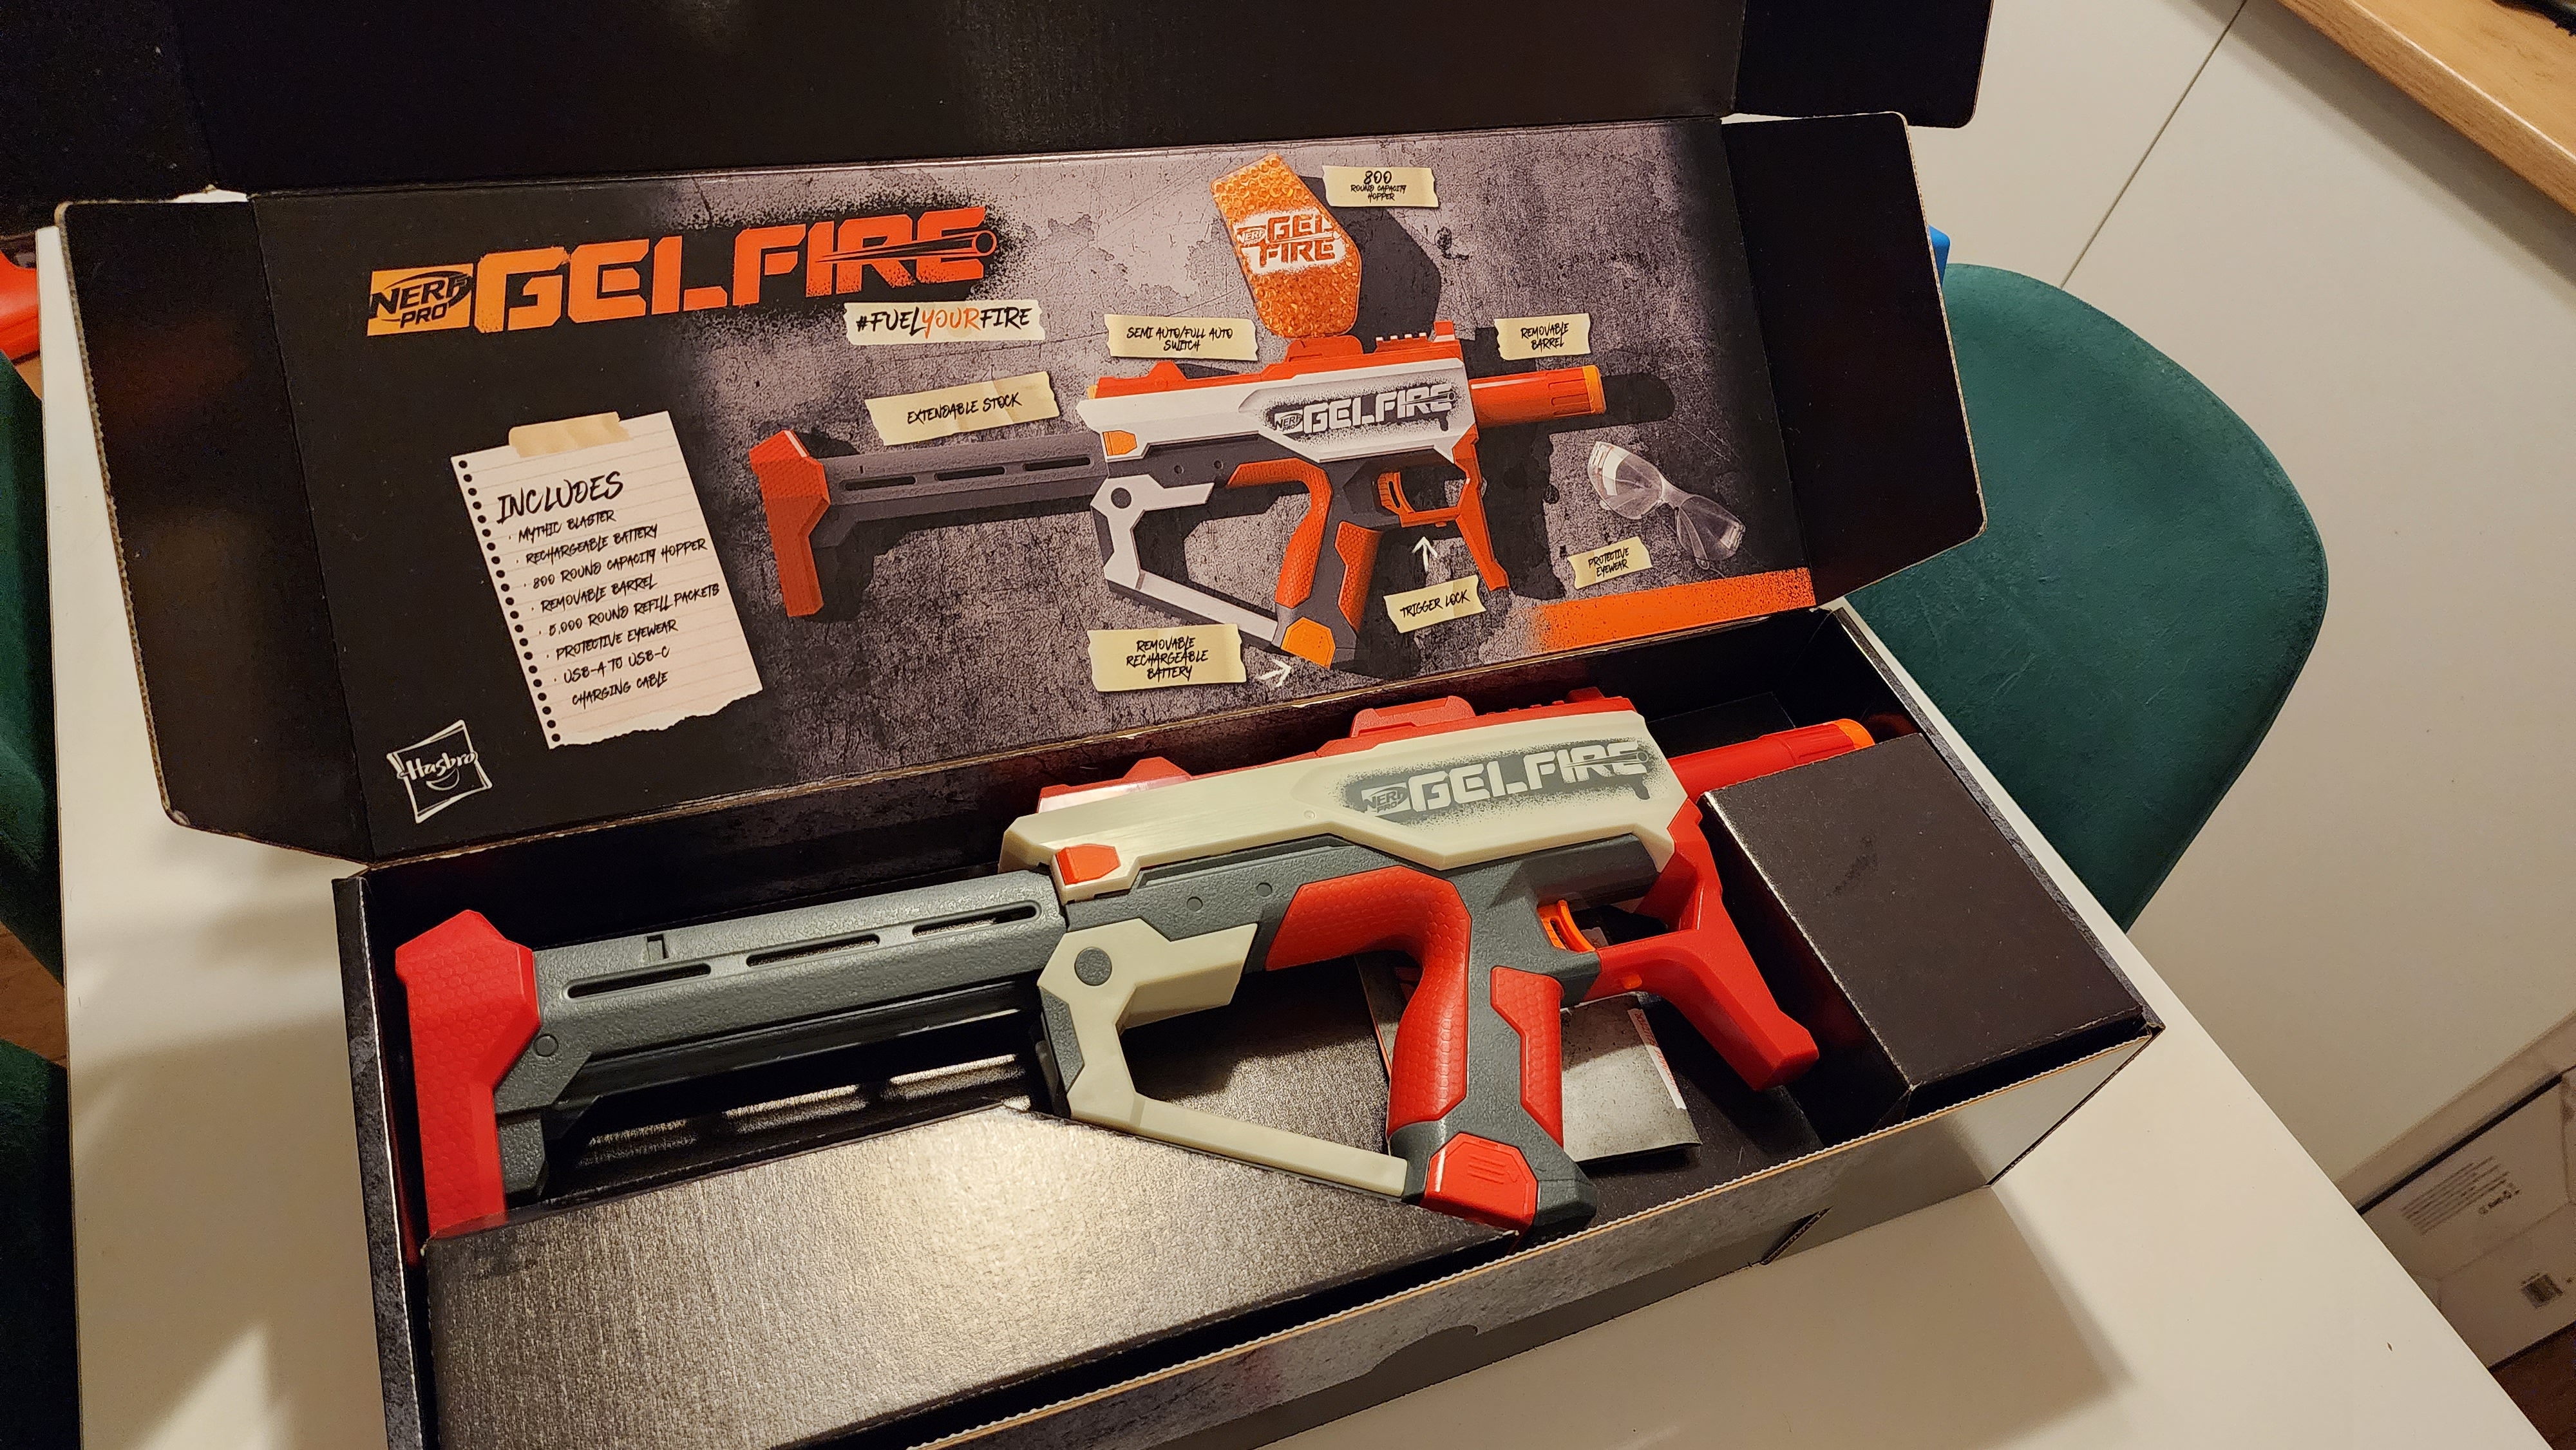 Nerf Gel Fire Ghost Blaster, Toy Blasters & Soakers